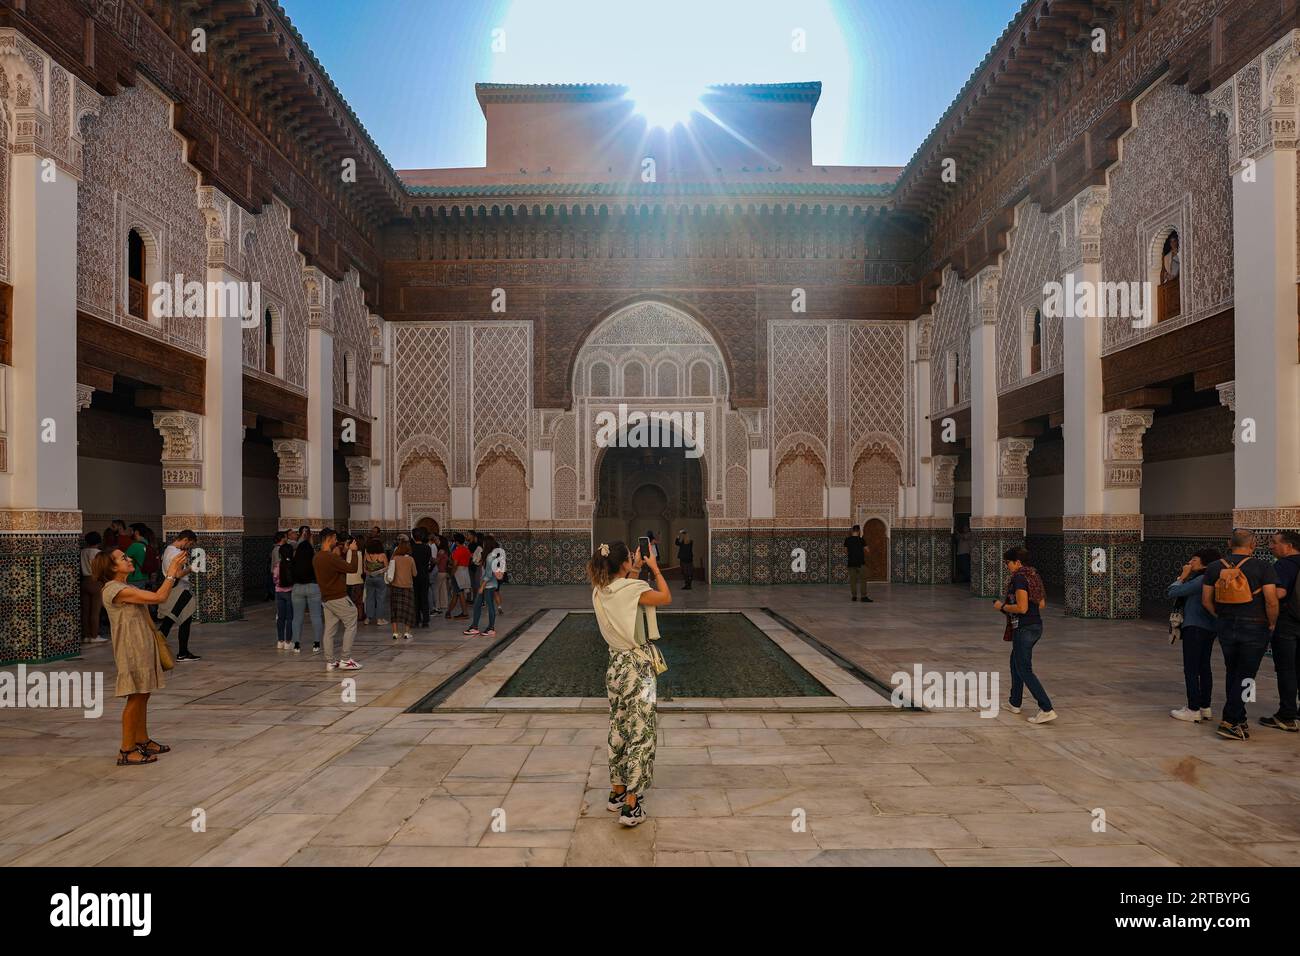 Afrique du Nord. Maroc. Marrakech. Les touristes prennent des photos à Madrasa Ben Youssef. La madrassah la plus grande et la plus importante du Maroc Banque D'Images